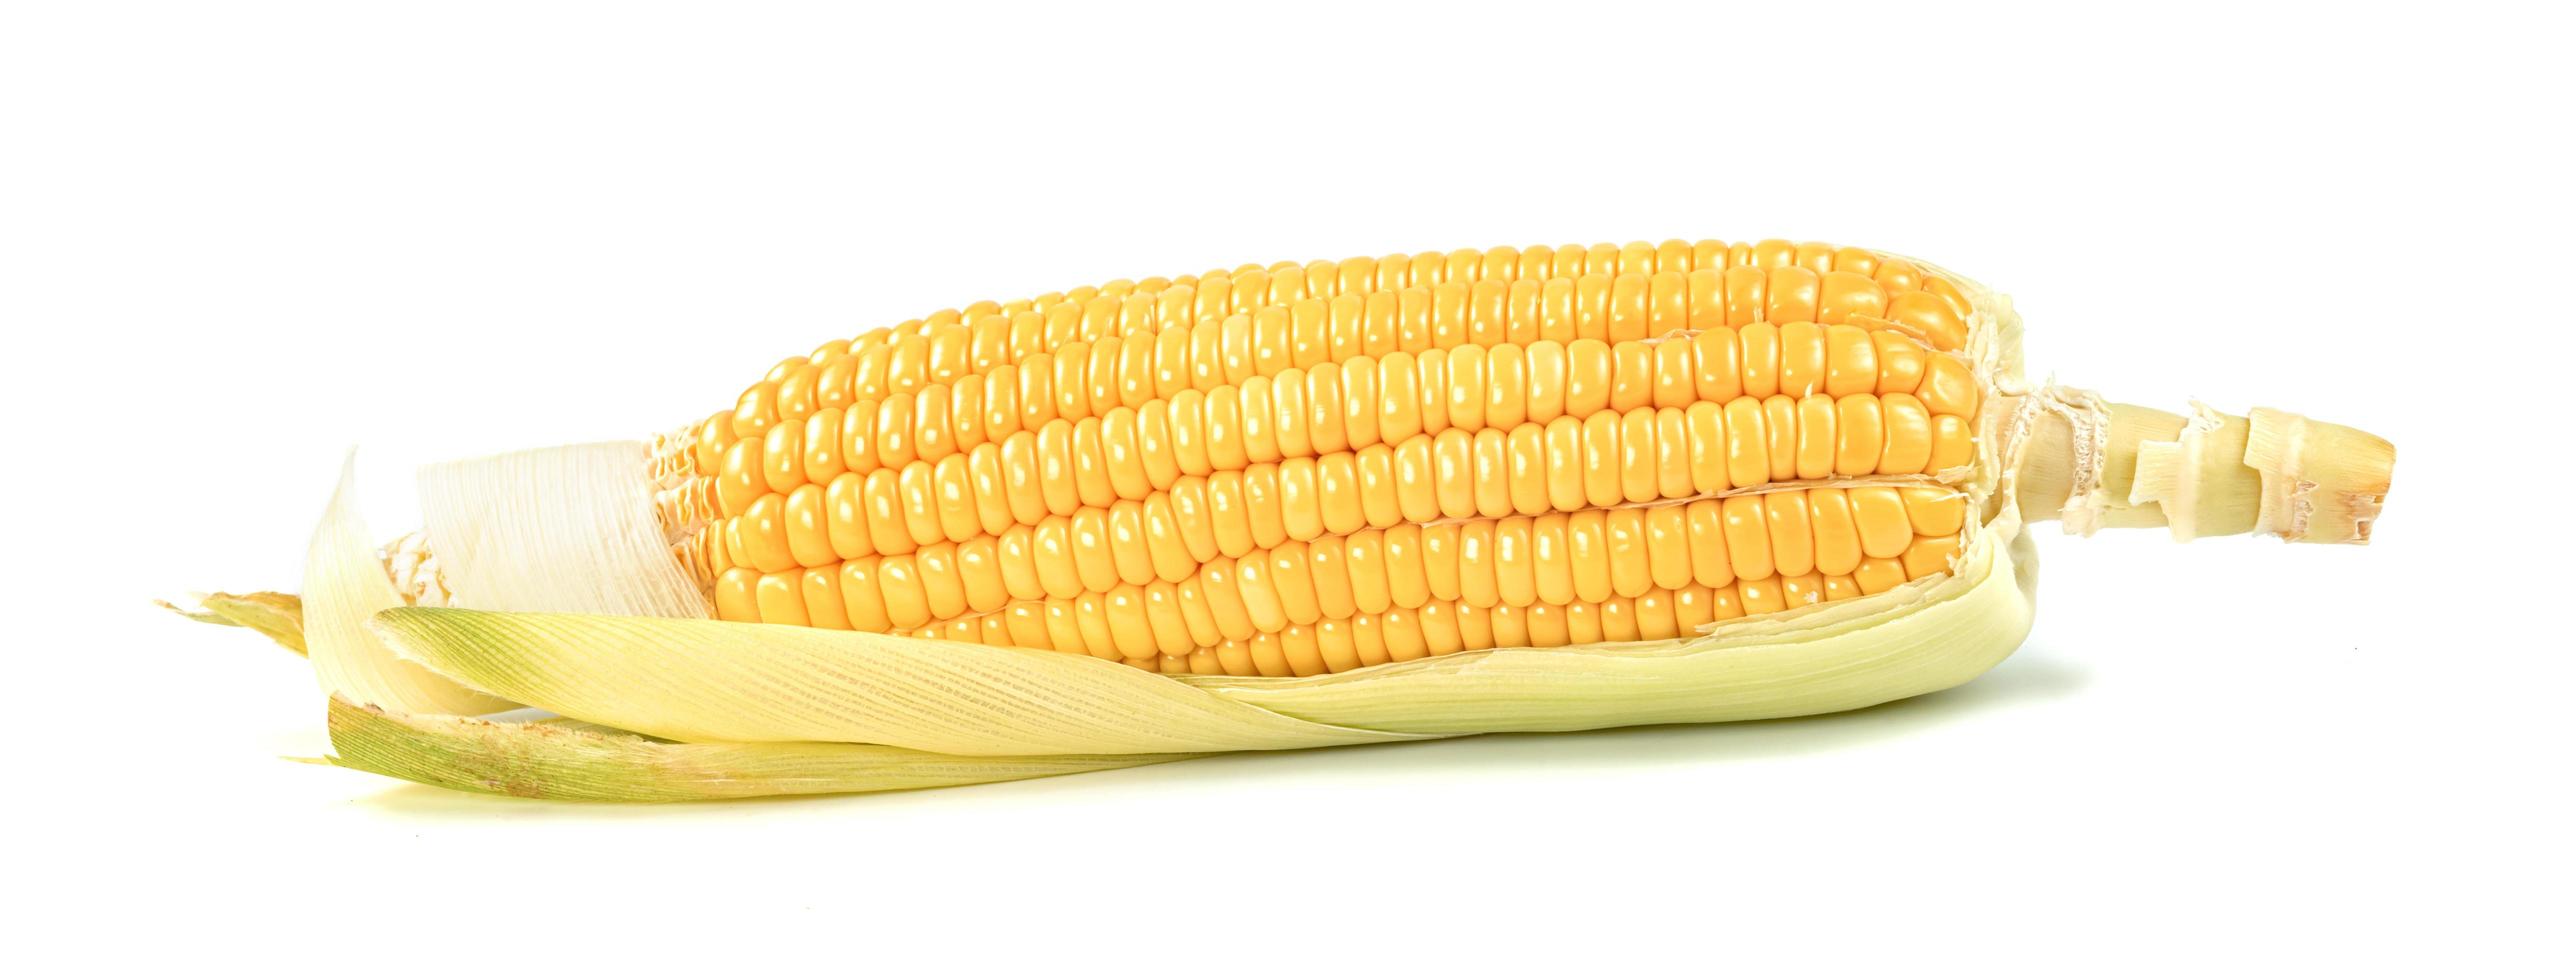 corn isolated on white background photo